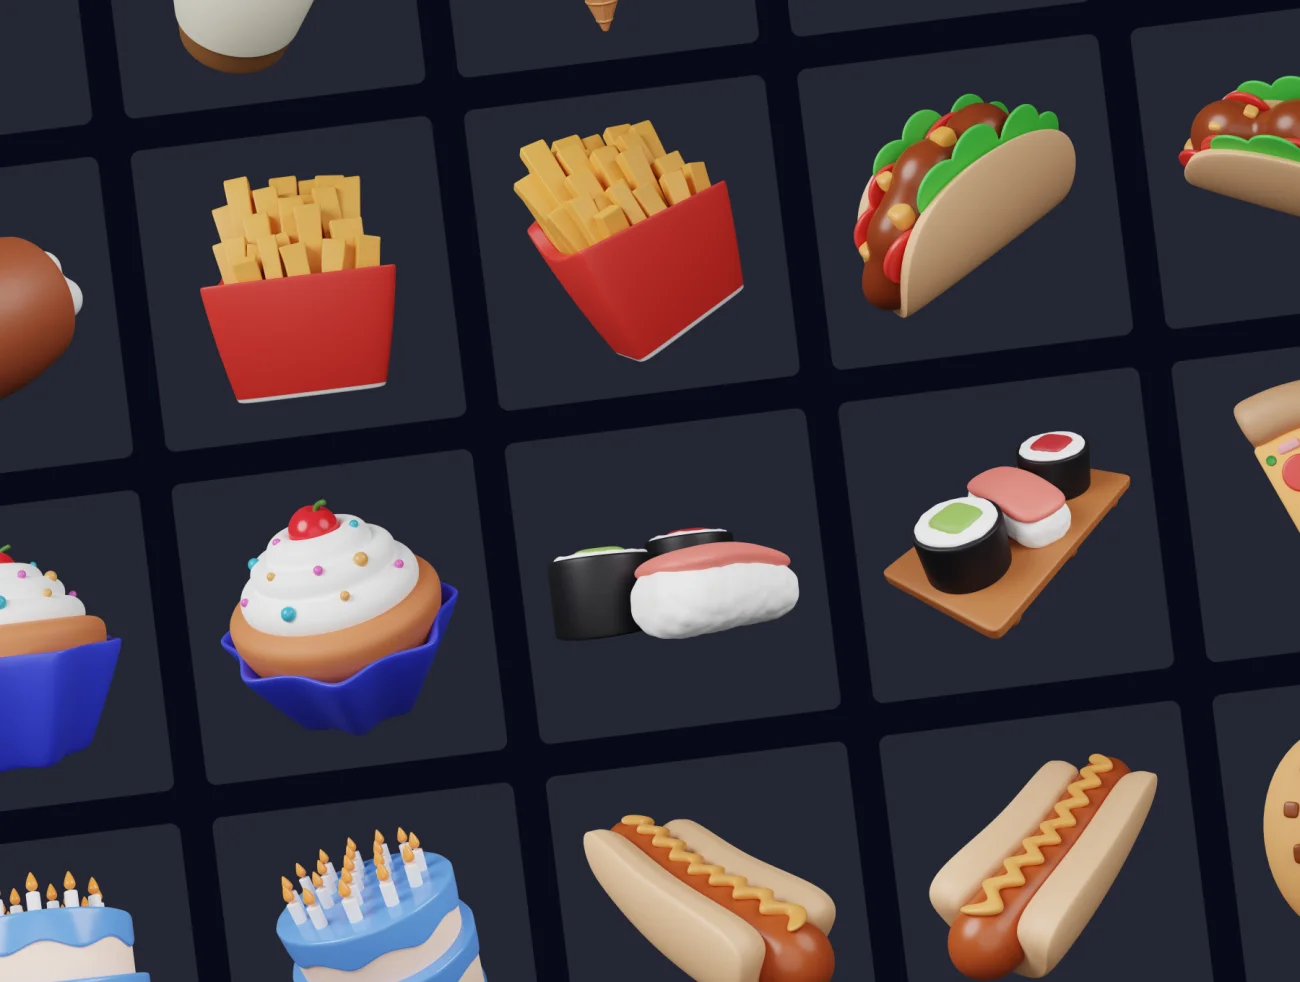 40款垃圾食品快餐汉堡薯条冰激凌3D图标素材包 Junk Food Pack - Customizable 3D Icons-3D/图标-到位啦UI